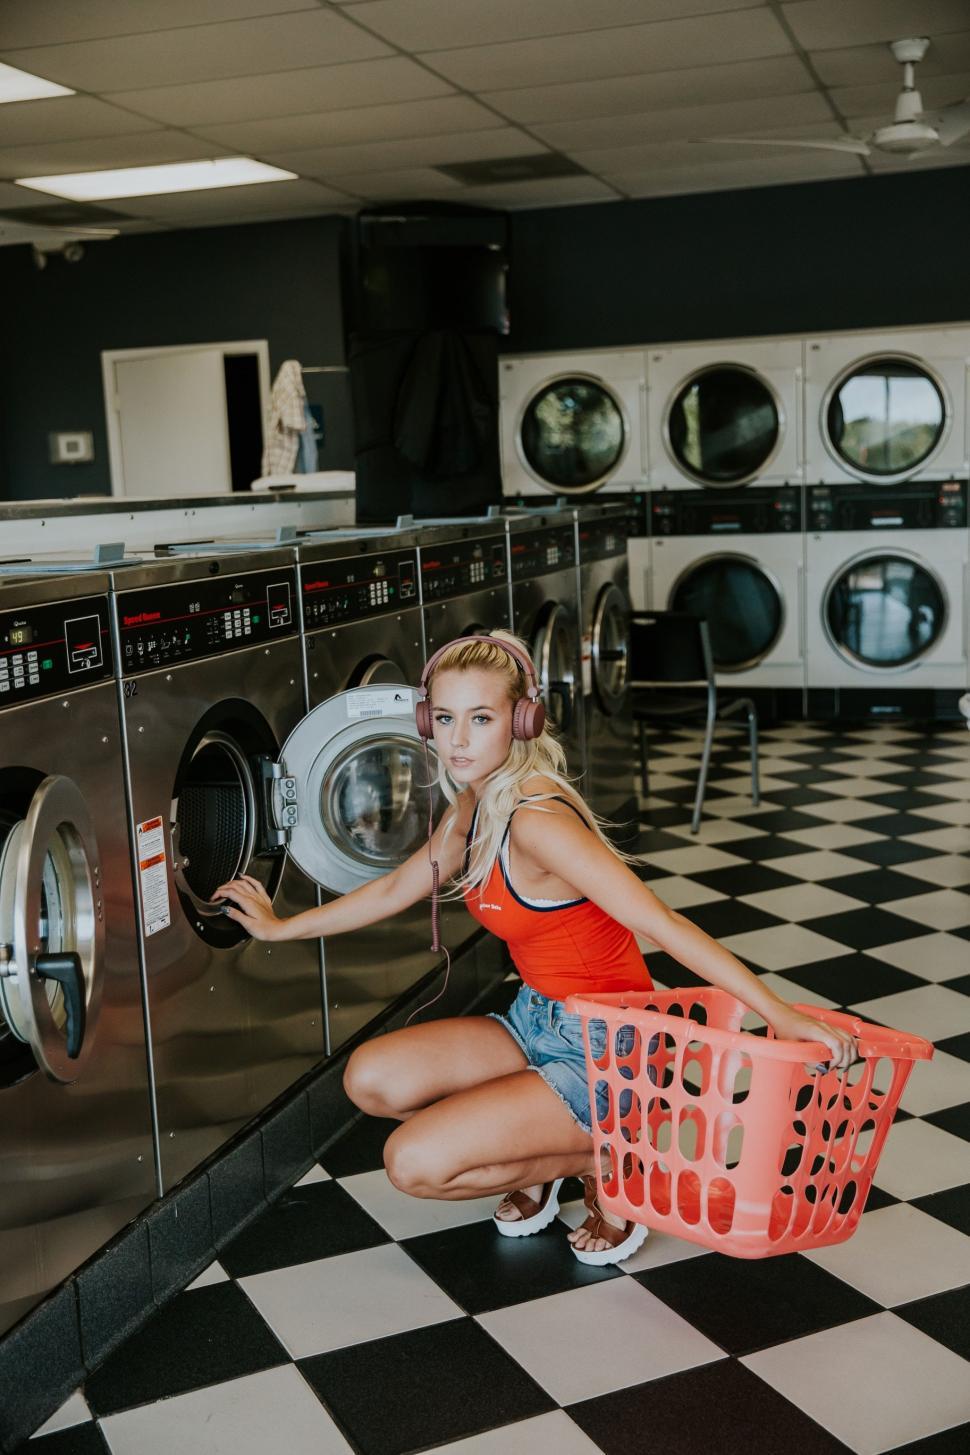 Free Image of Woman Kneeling Next to Washing Machine 